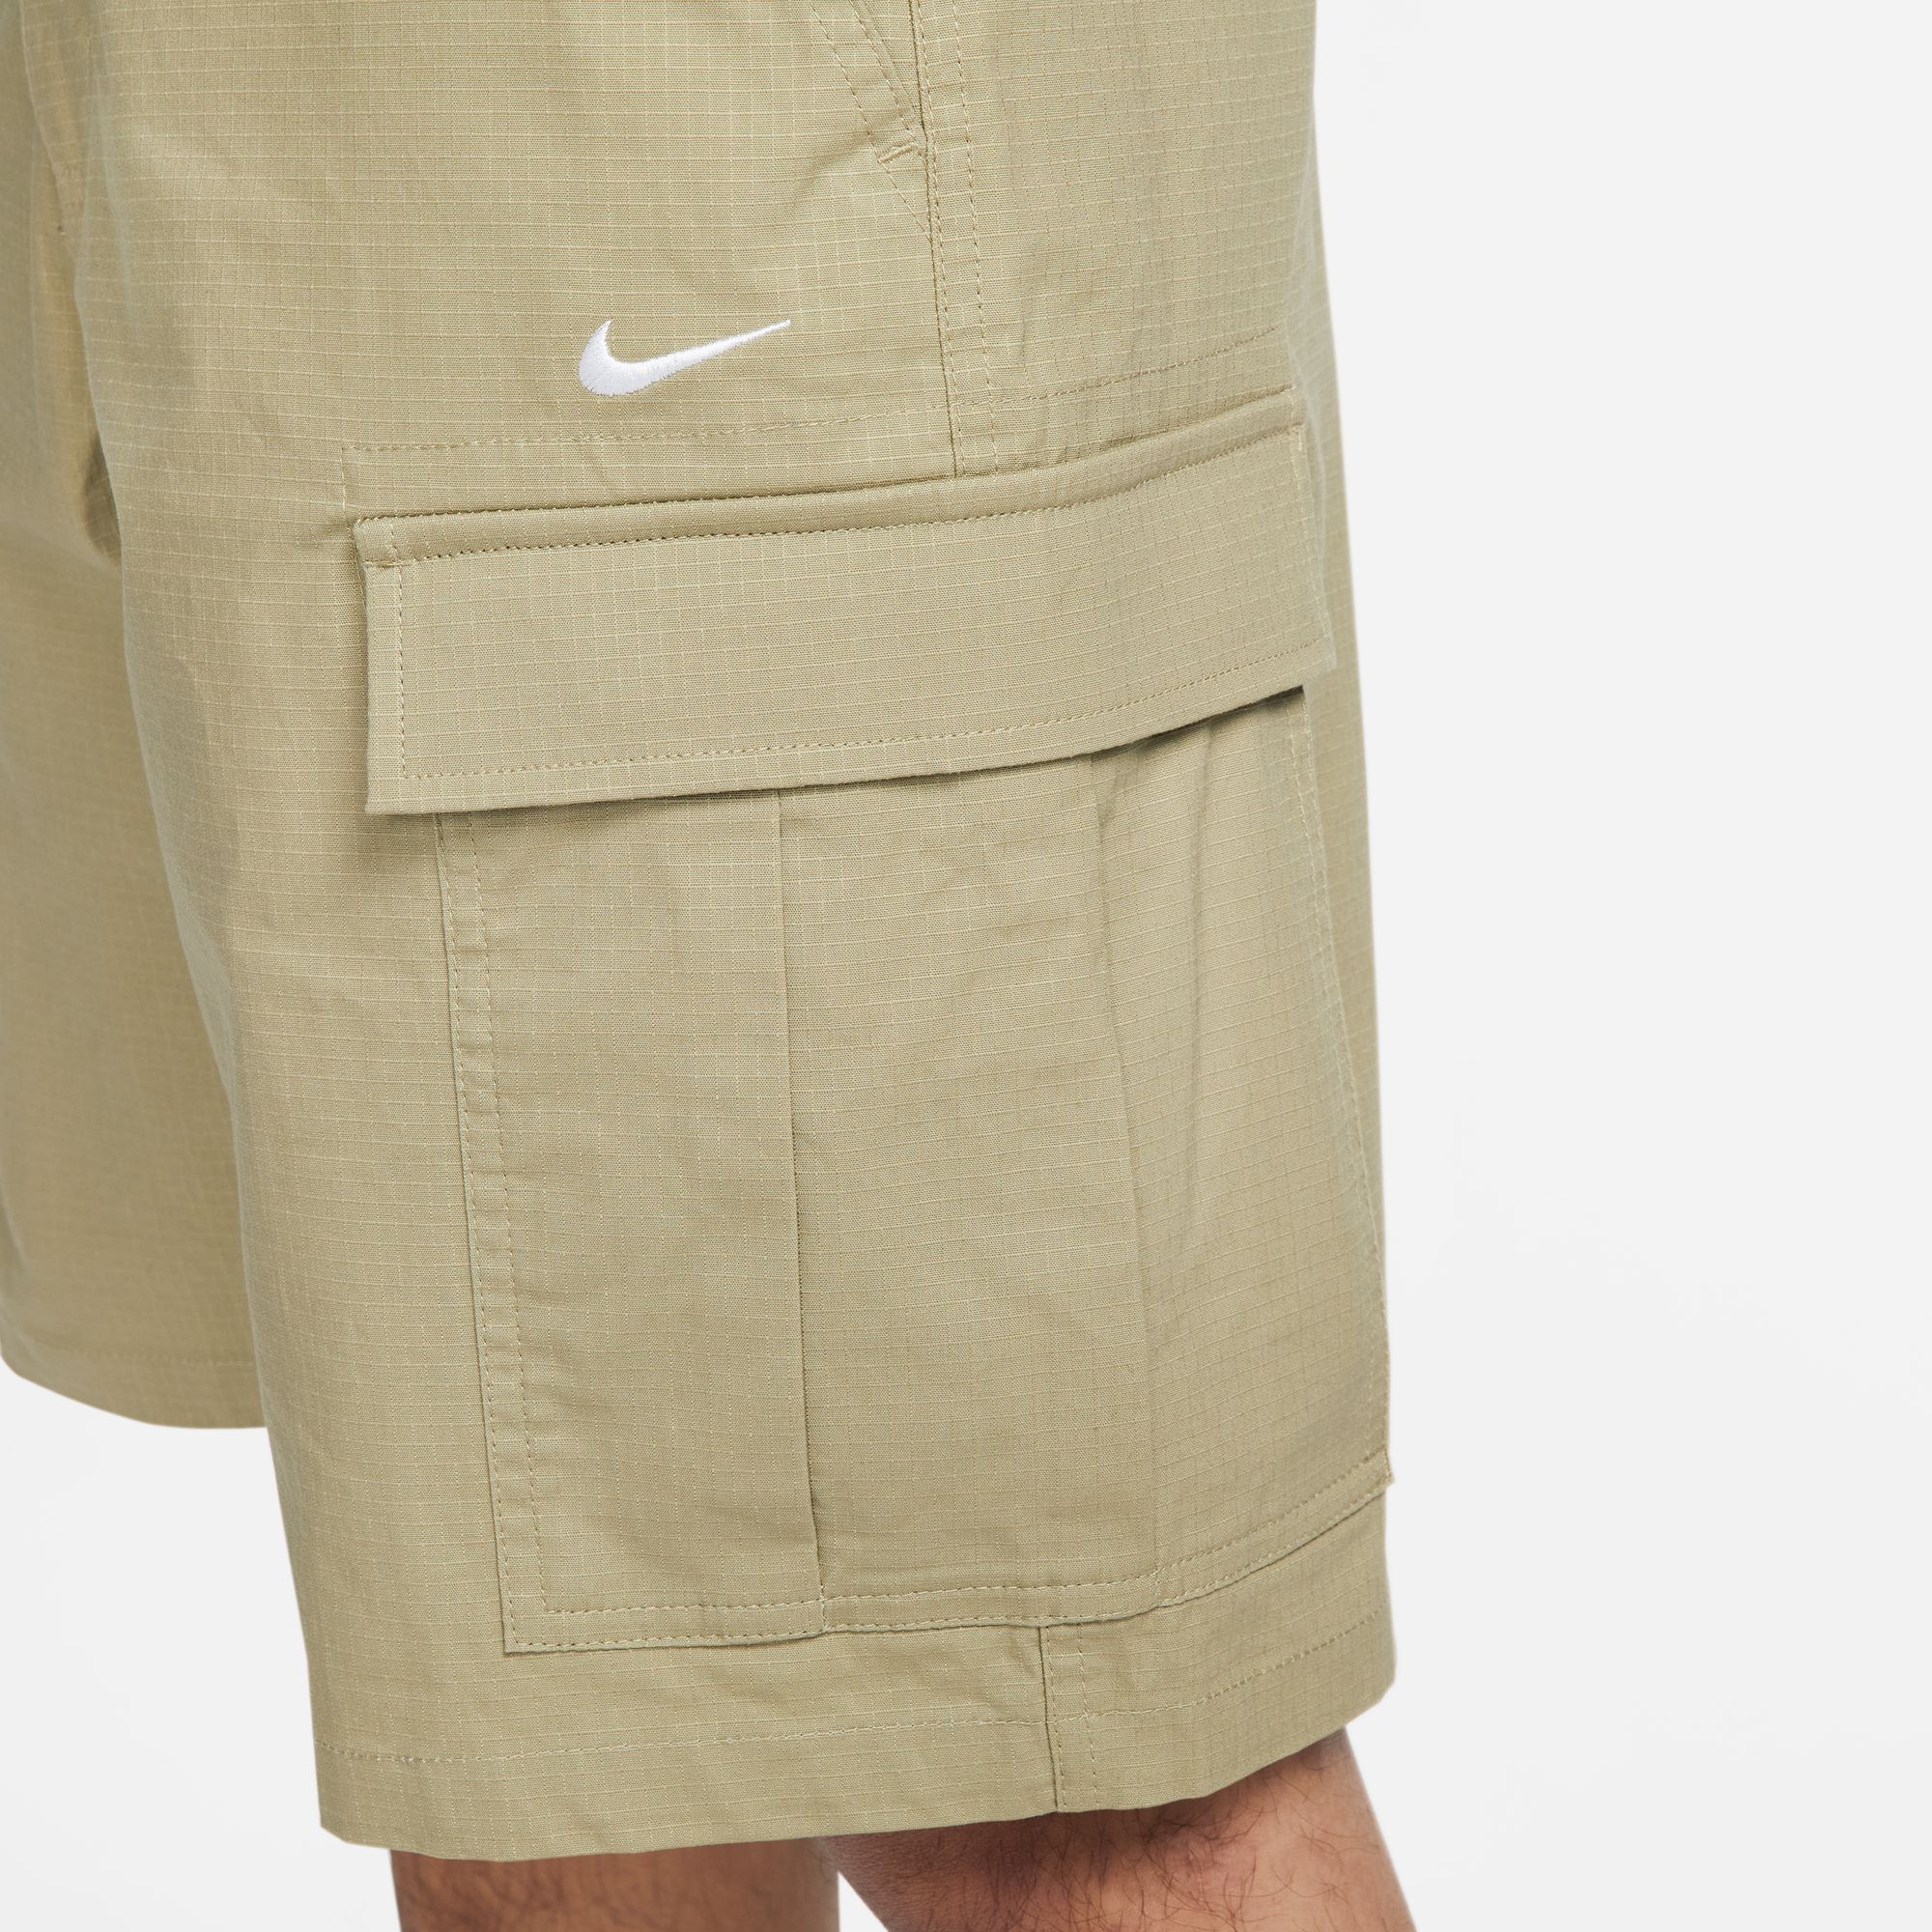 Nike SB Skate Cargo Shorts Brown 06